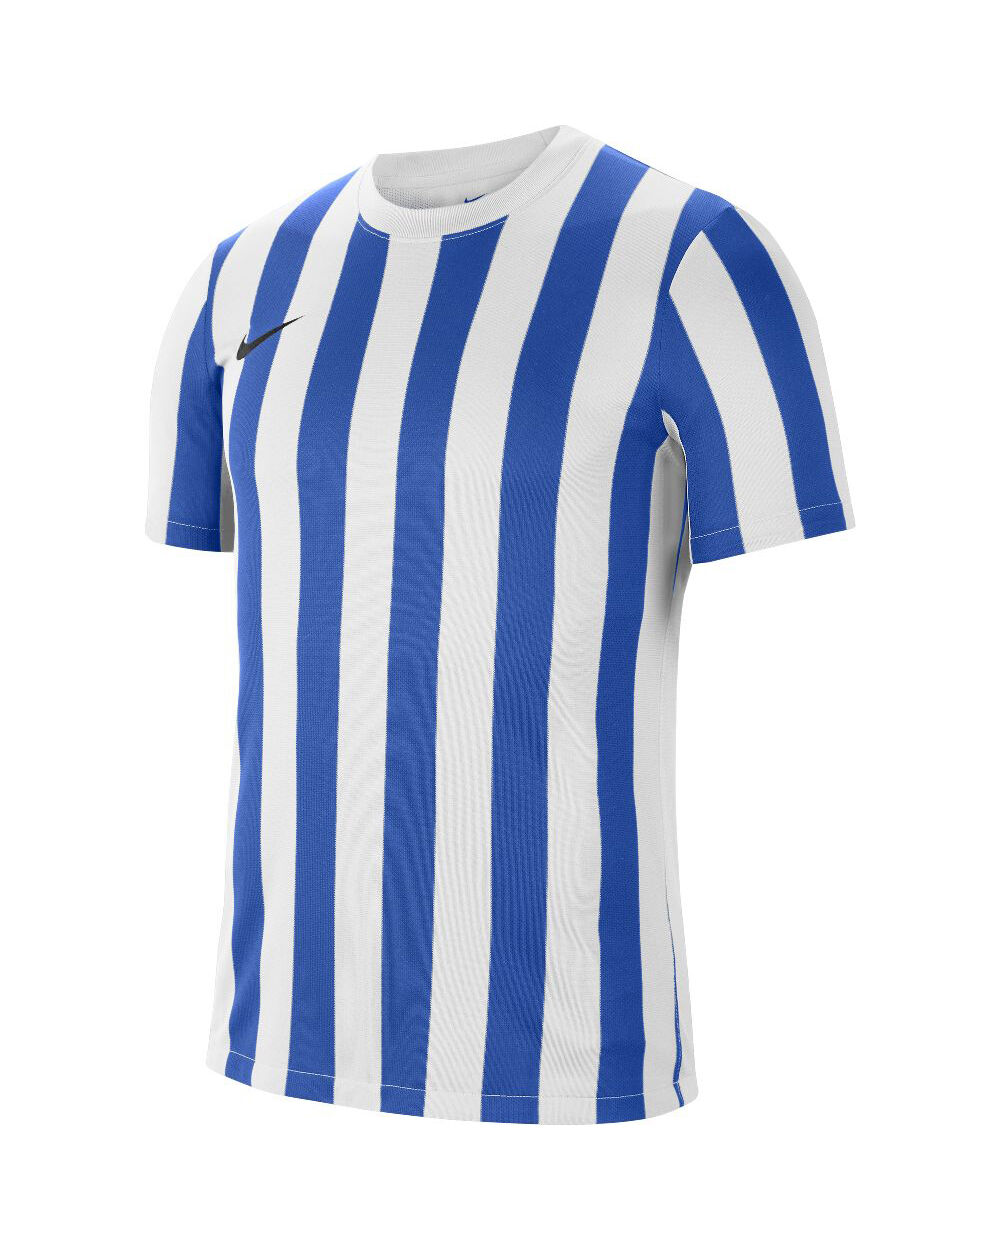 Nike Maglia Striped Division IV Blu Bianco e Reale per Uomo CW3813-102 2XL